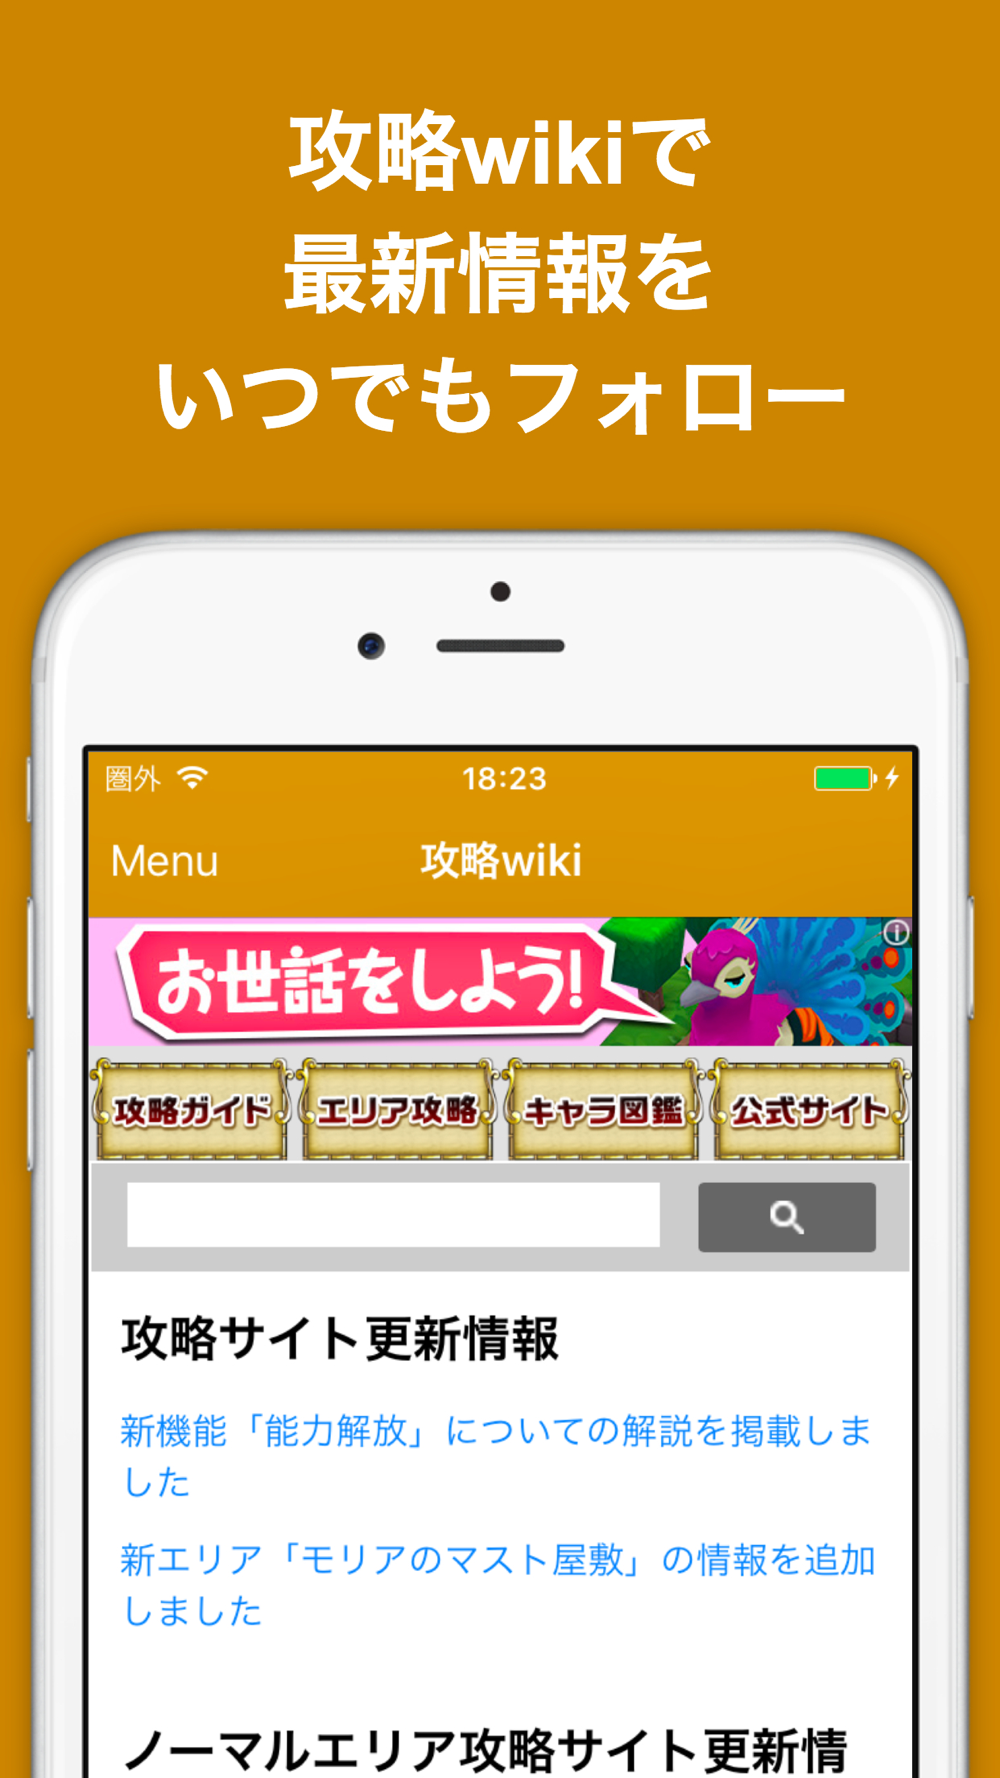 ブログまとめニュース速報 For ワンピース トレジャークルーズトレクル Free Download App For Iphone Steprimo Com